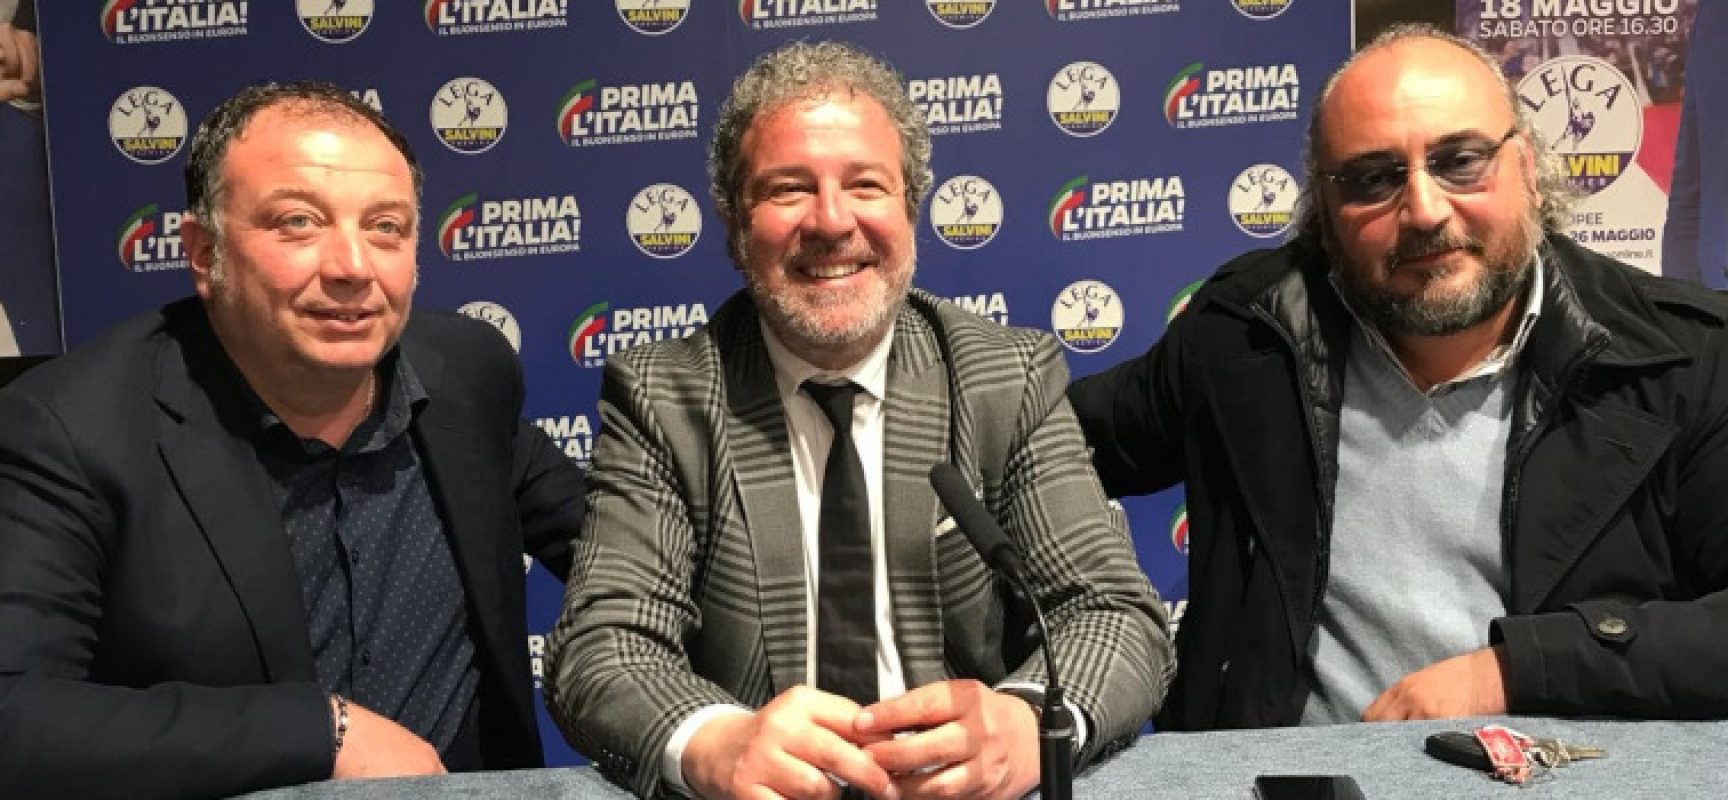 Il consigliere comunale Rossano Sasso passa al gruppo “Lega – Salvini Premier”